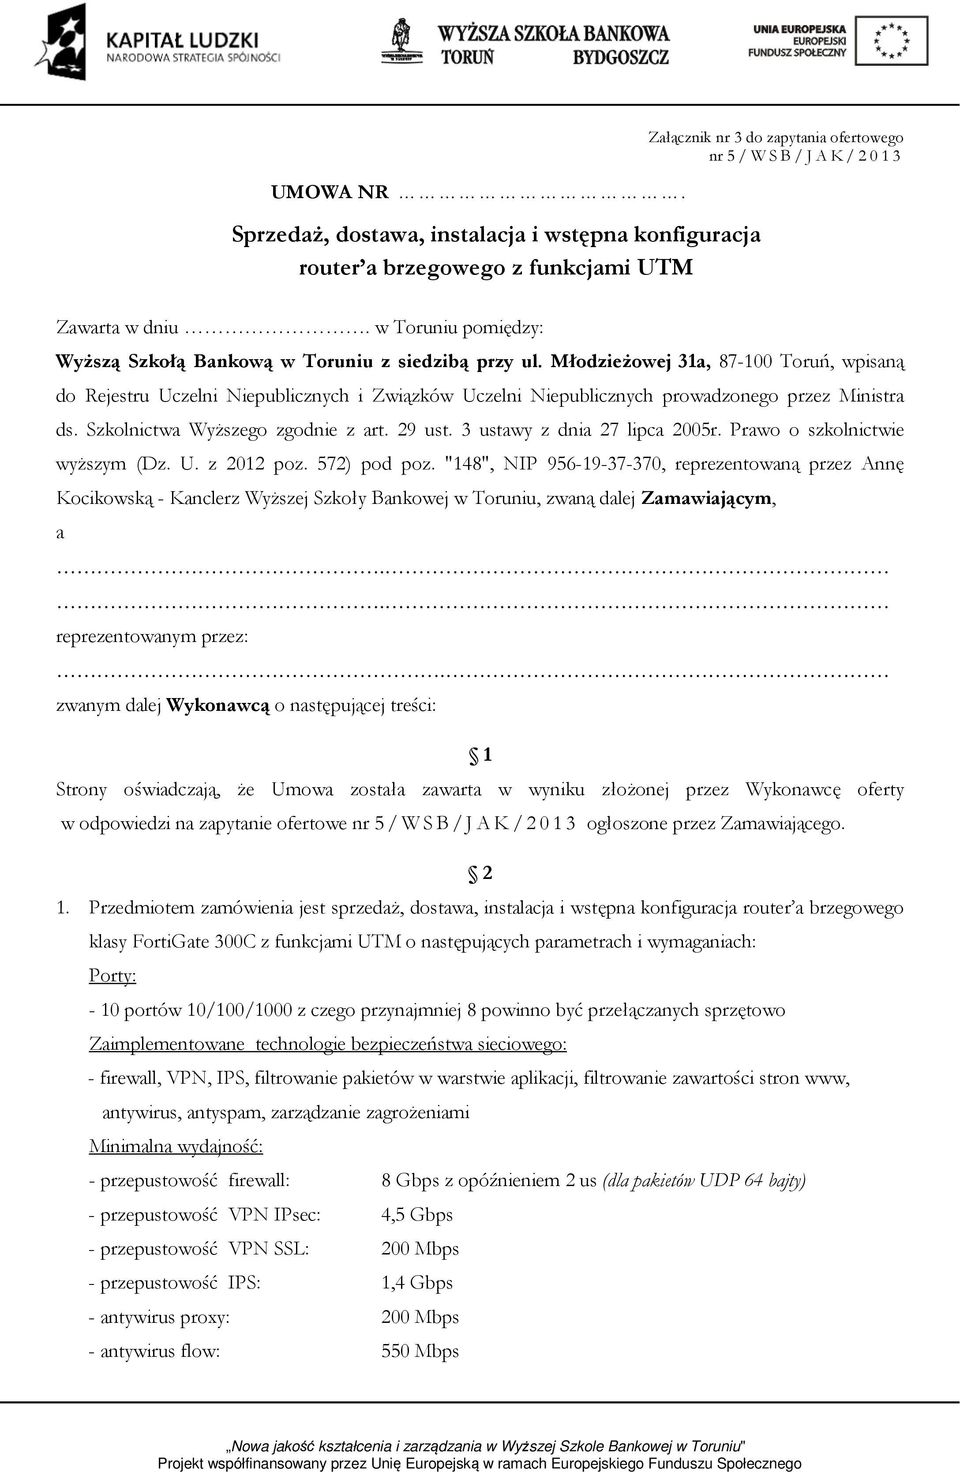 Młodzieżowej 31a, 87-100 Toruń, wpisaną do Rejestru Uczelni Niepublicznych i Związków Uczelni Niepublicznych prowadzonego przez Ministra ds. Szkolnictwa Wyższego zgodnie z art. 29 ust.